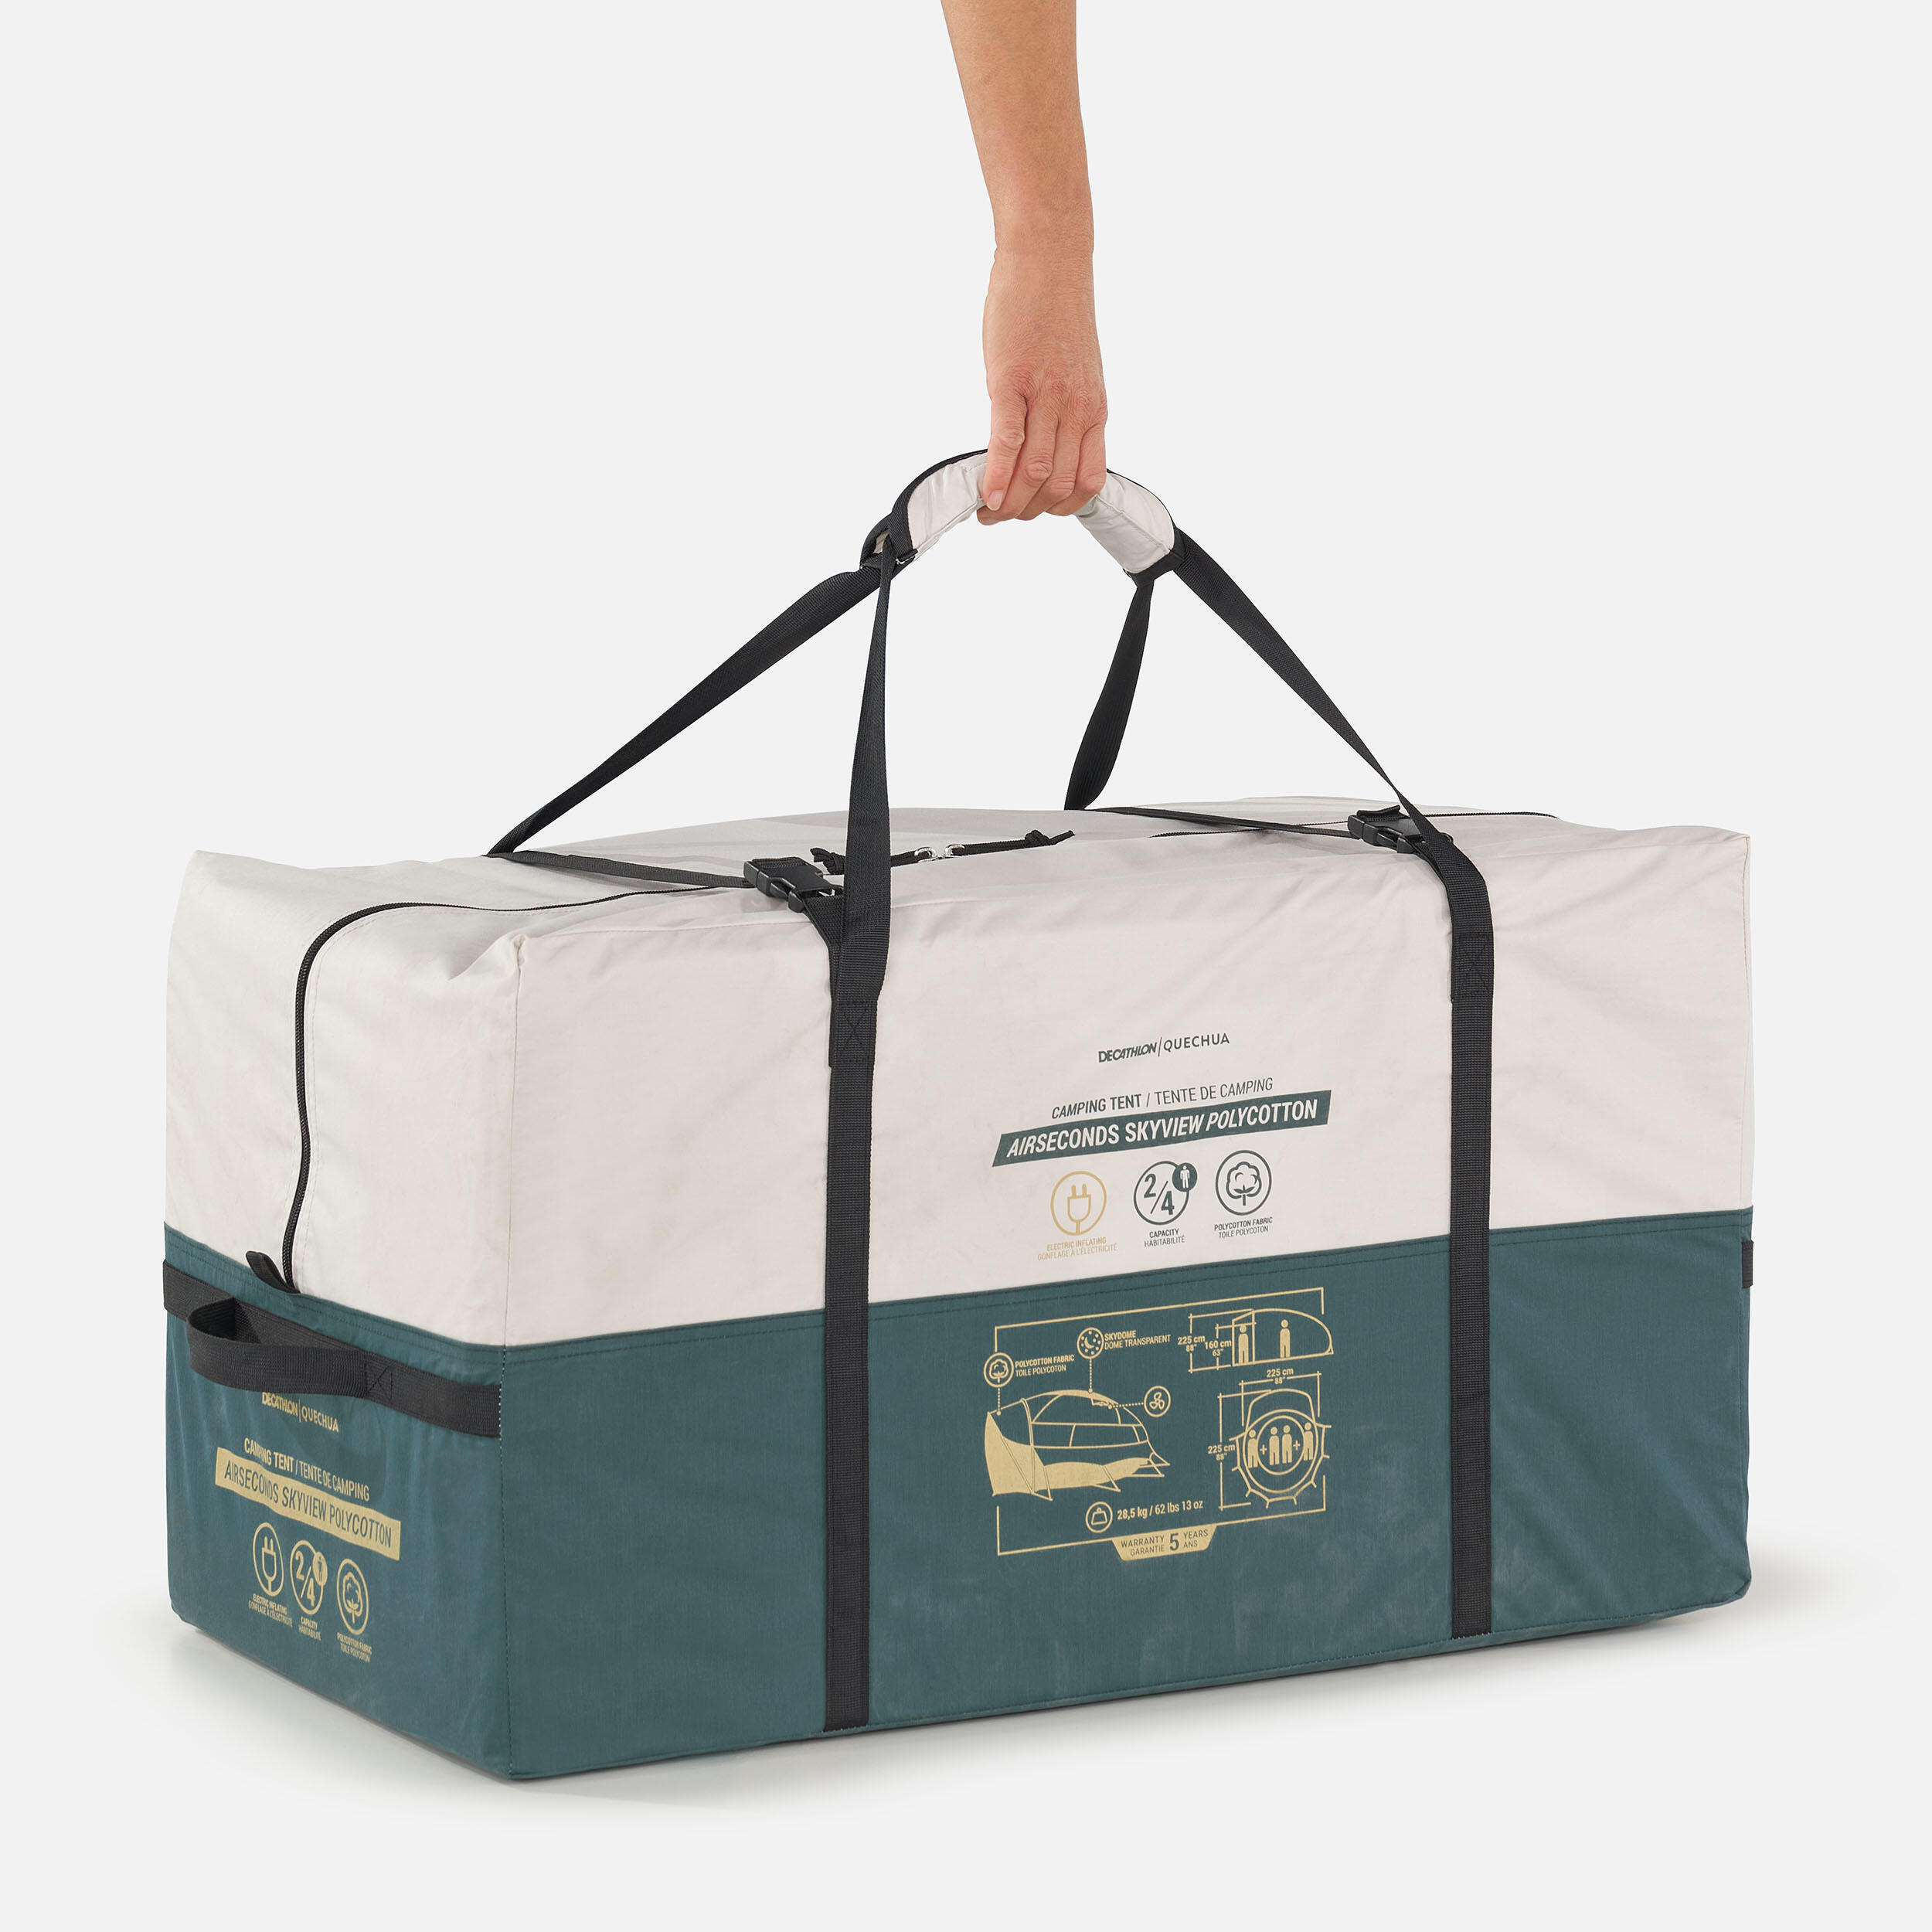 Packing compact en sac transport de 36,5 kg tout compris.